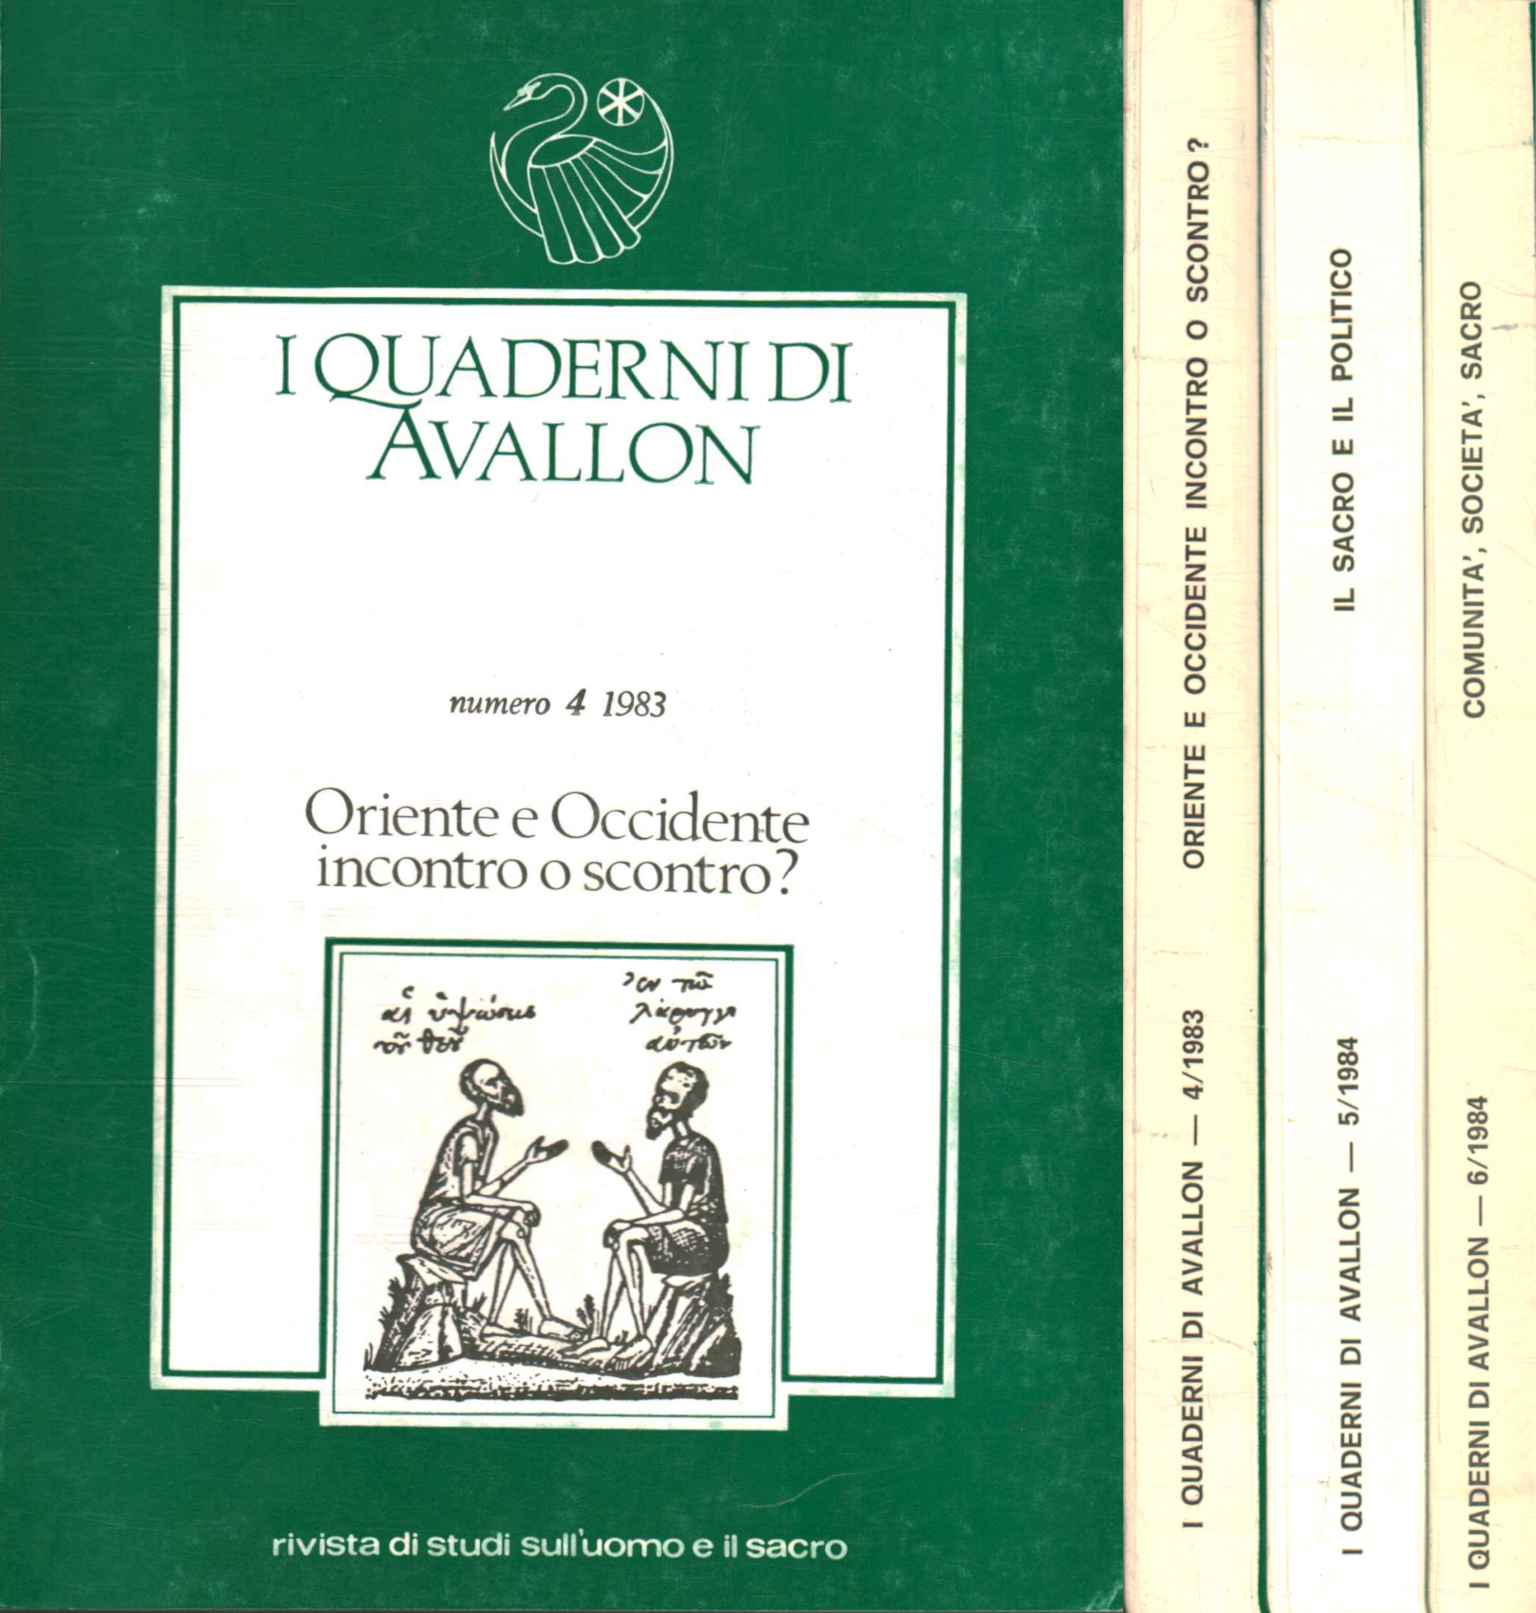 Les Cahiers d'Avallon 1984 (3 Volumes),Les Cahiers d'Avallon 1984 (3 Volumes,,Les Cahiers d'Avallon 1984 (3 Volumes),,Les Cahiers d'Avallon 1984 (3 Volumes,